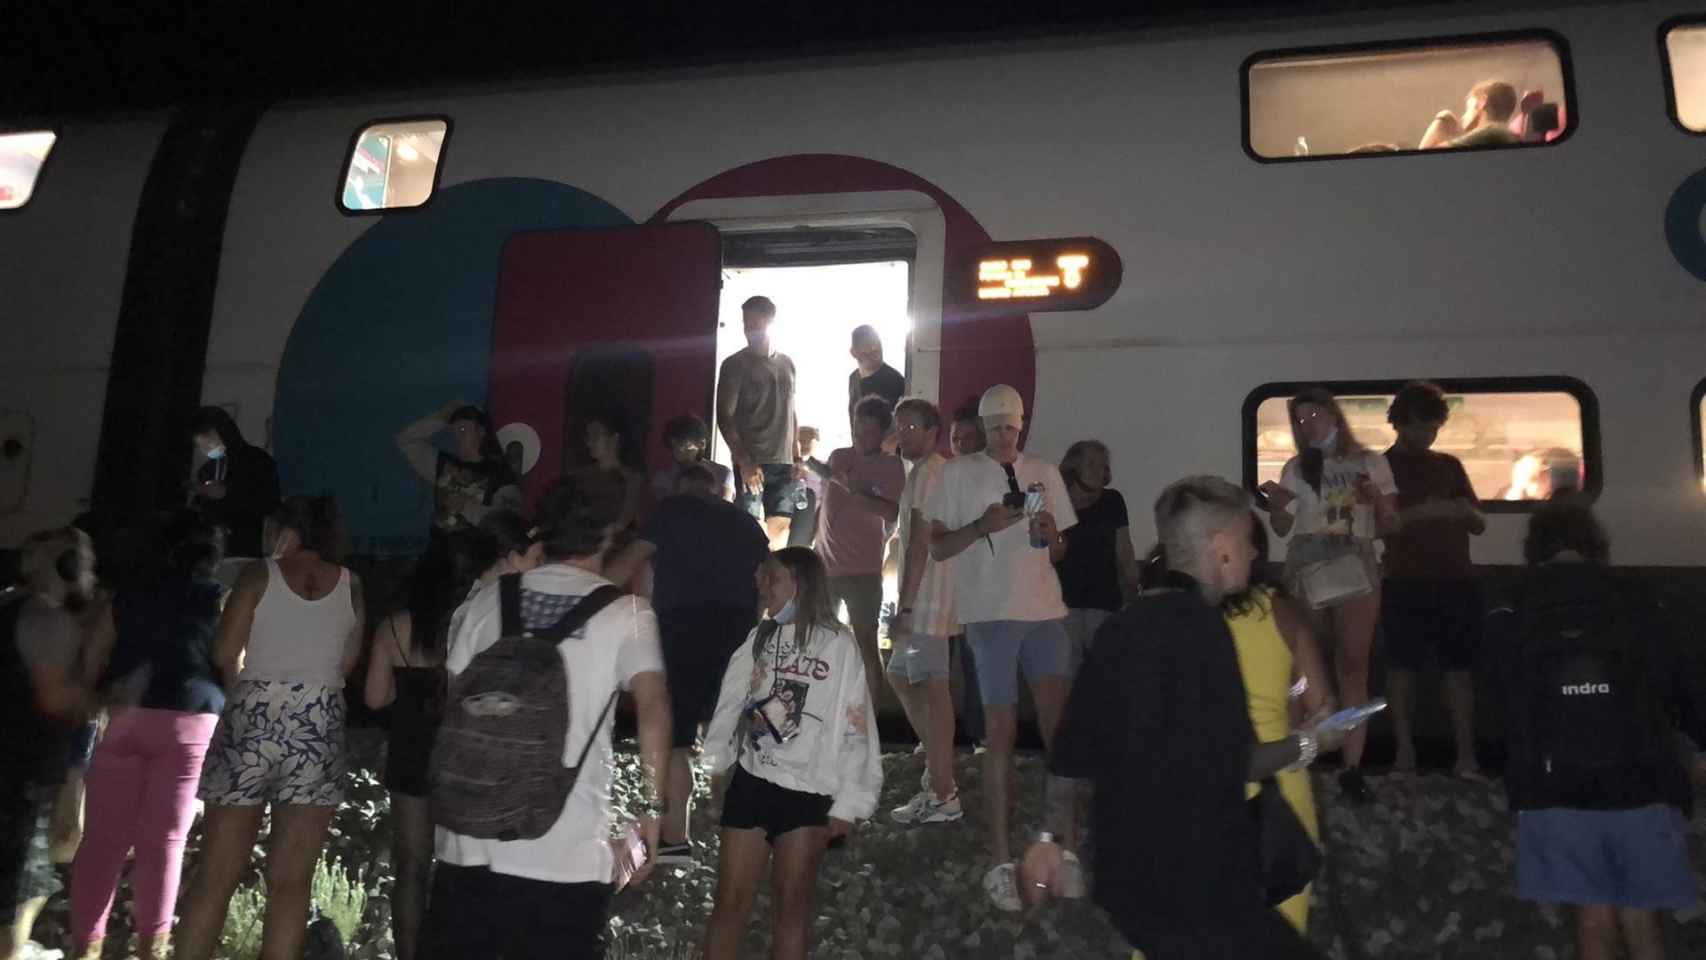 El tren de Ouigo detenido en Alhabama de Aragón, Zaragoza / ALBERTO PUCHADES @ALBPUCH